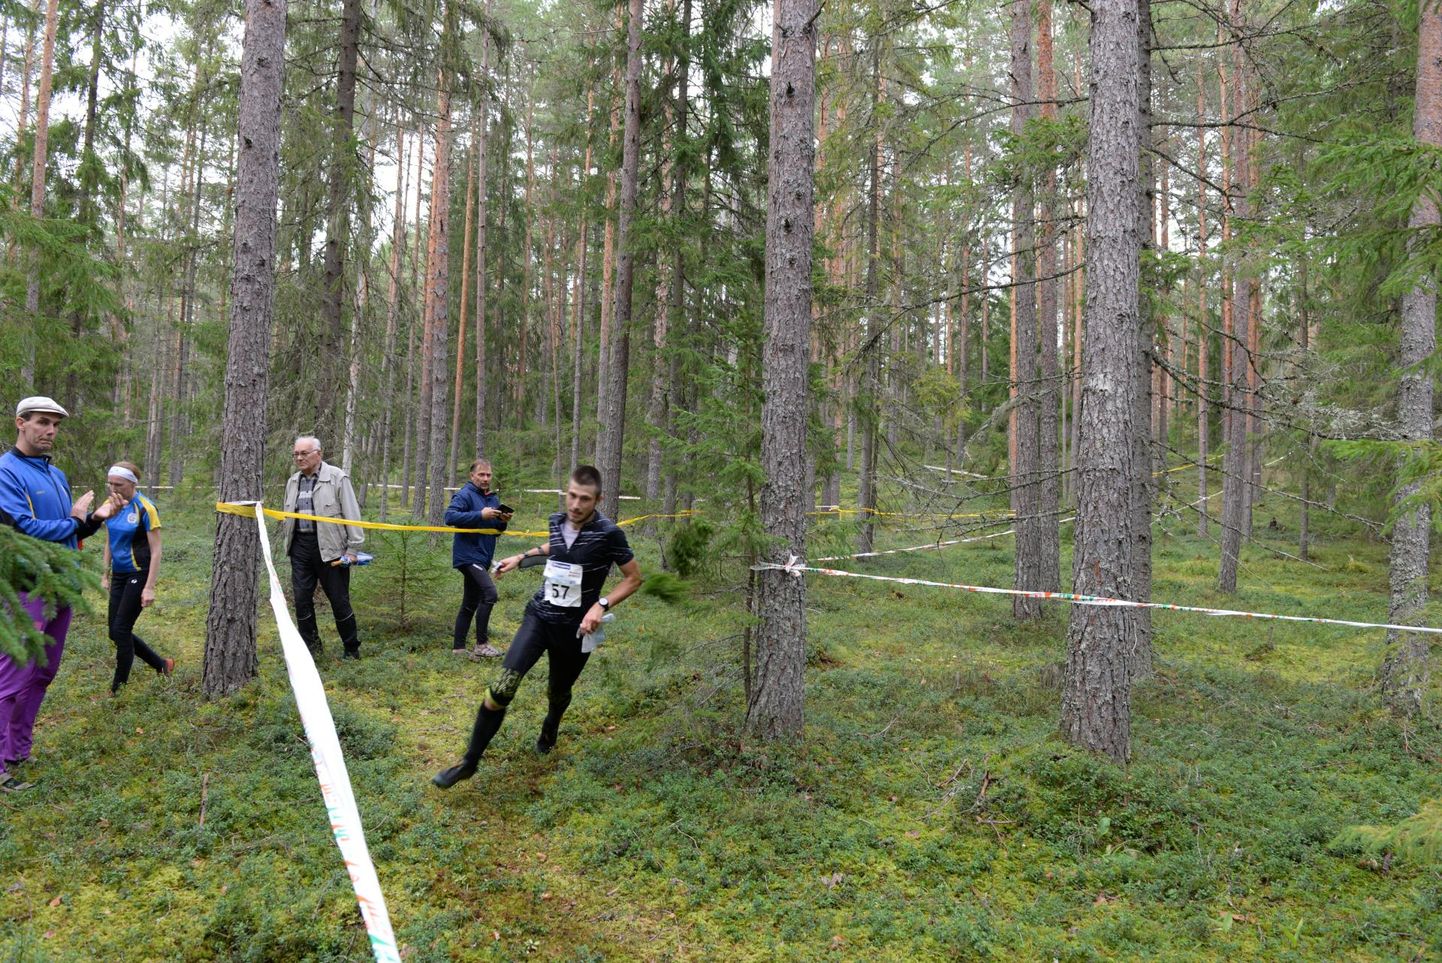 Põlula metsade vahel selgusid Eesti meistrid tavaraja- ja teateorienteerumises. Kahel võistlejal tuli aga tõtt vaadata ka metsaotiga.